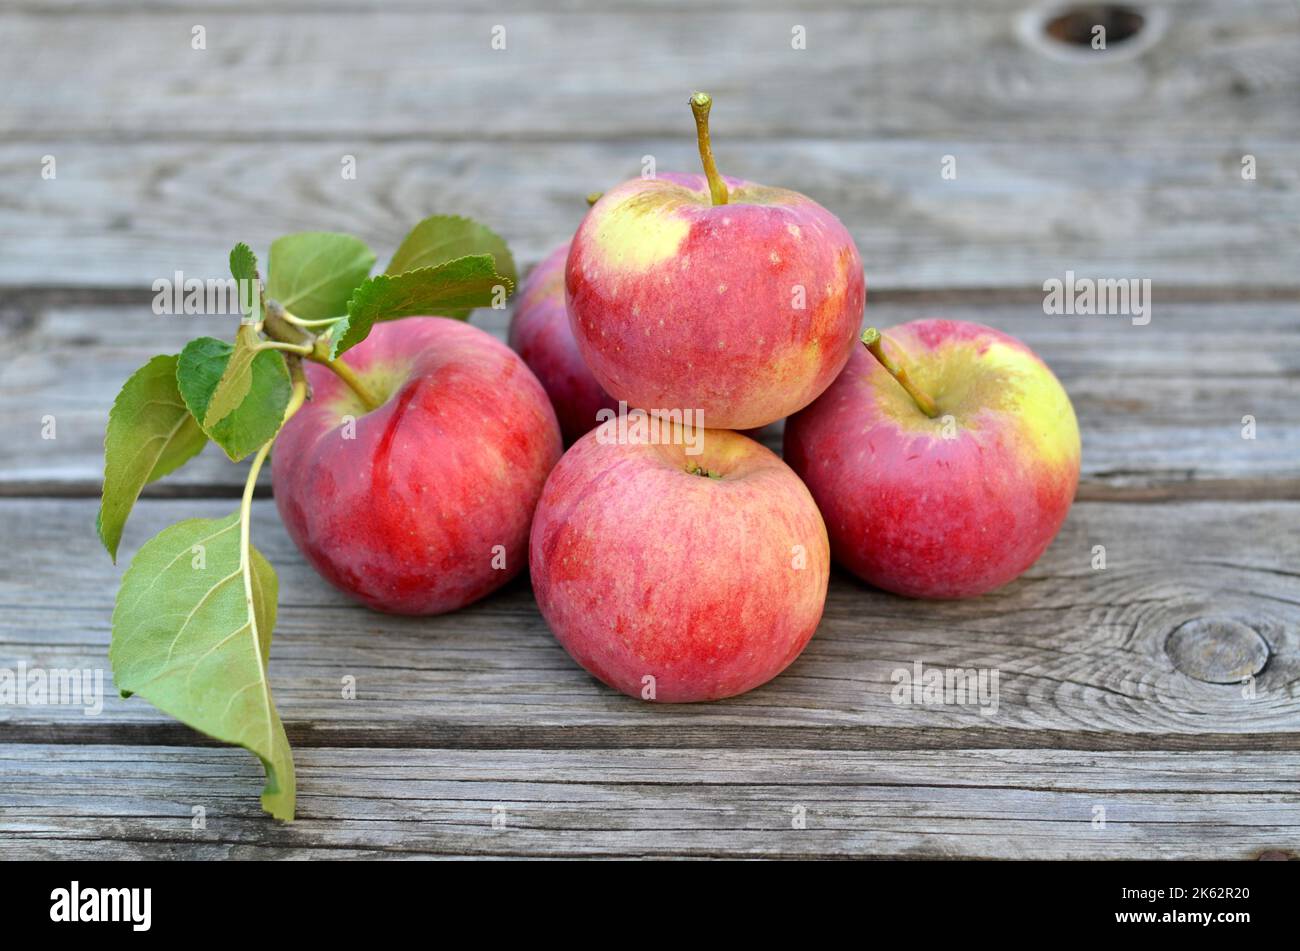 Frisch gepflückte reife Äpfel auf einem alten Holztisch. Konzept des Anbaus Ihrer eigenen Bio-Lebensmittel. Stockfoto